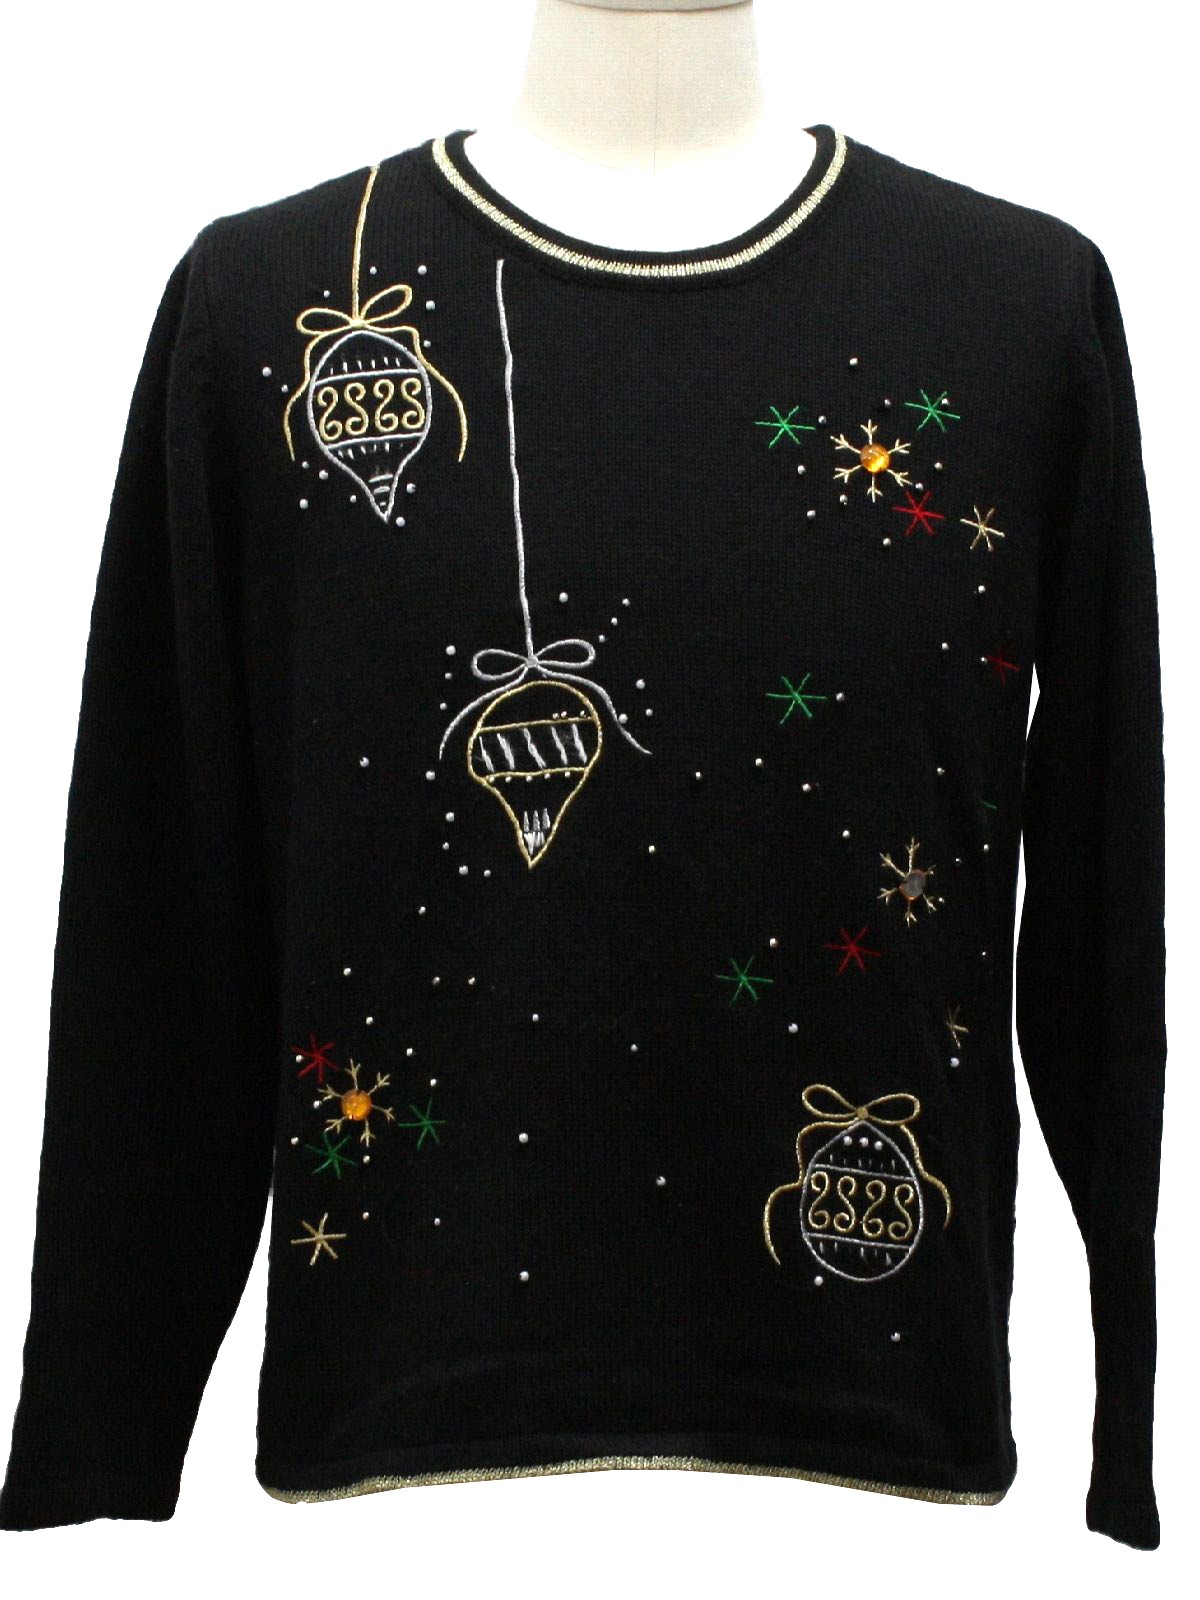 Ugly Christmas Sweater: -Missing Label- Unisex black background acrylic ...